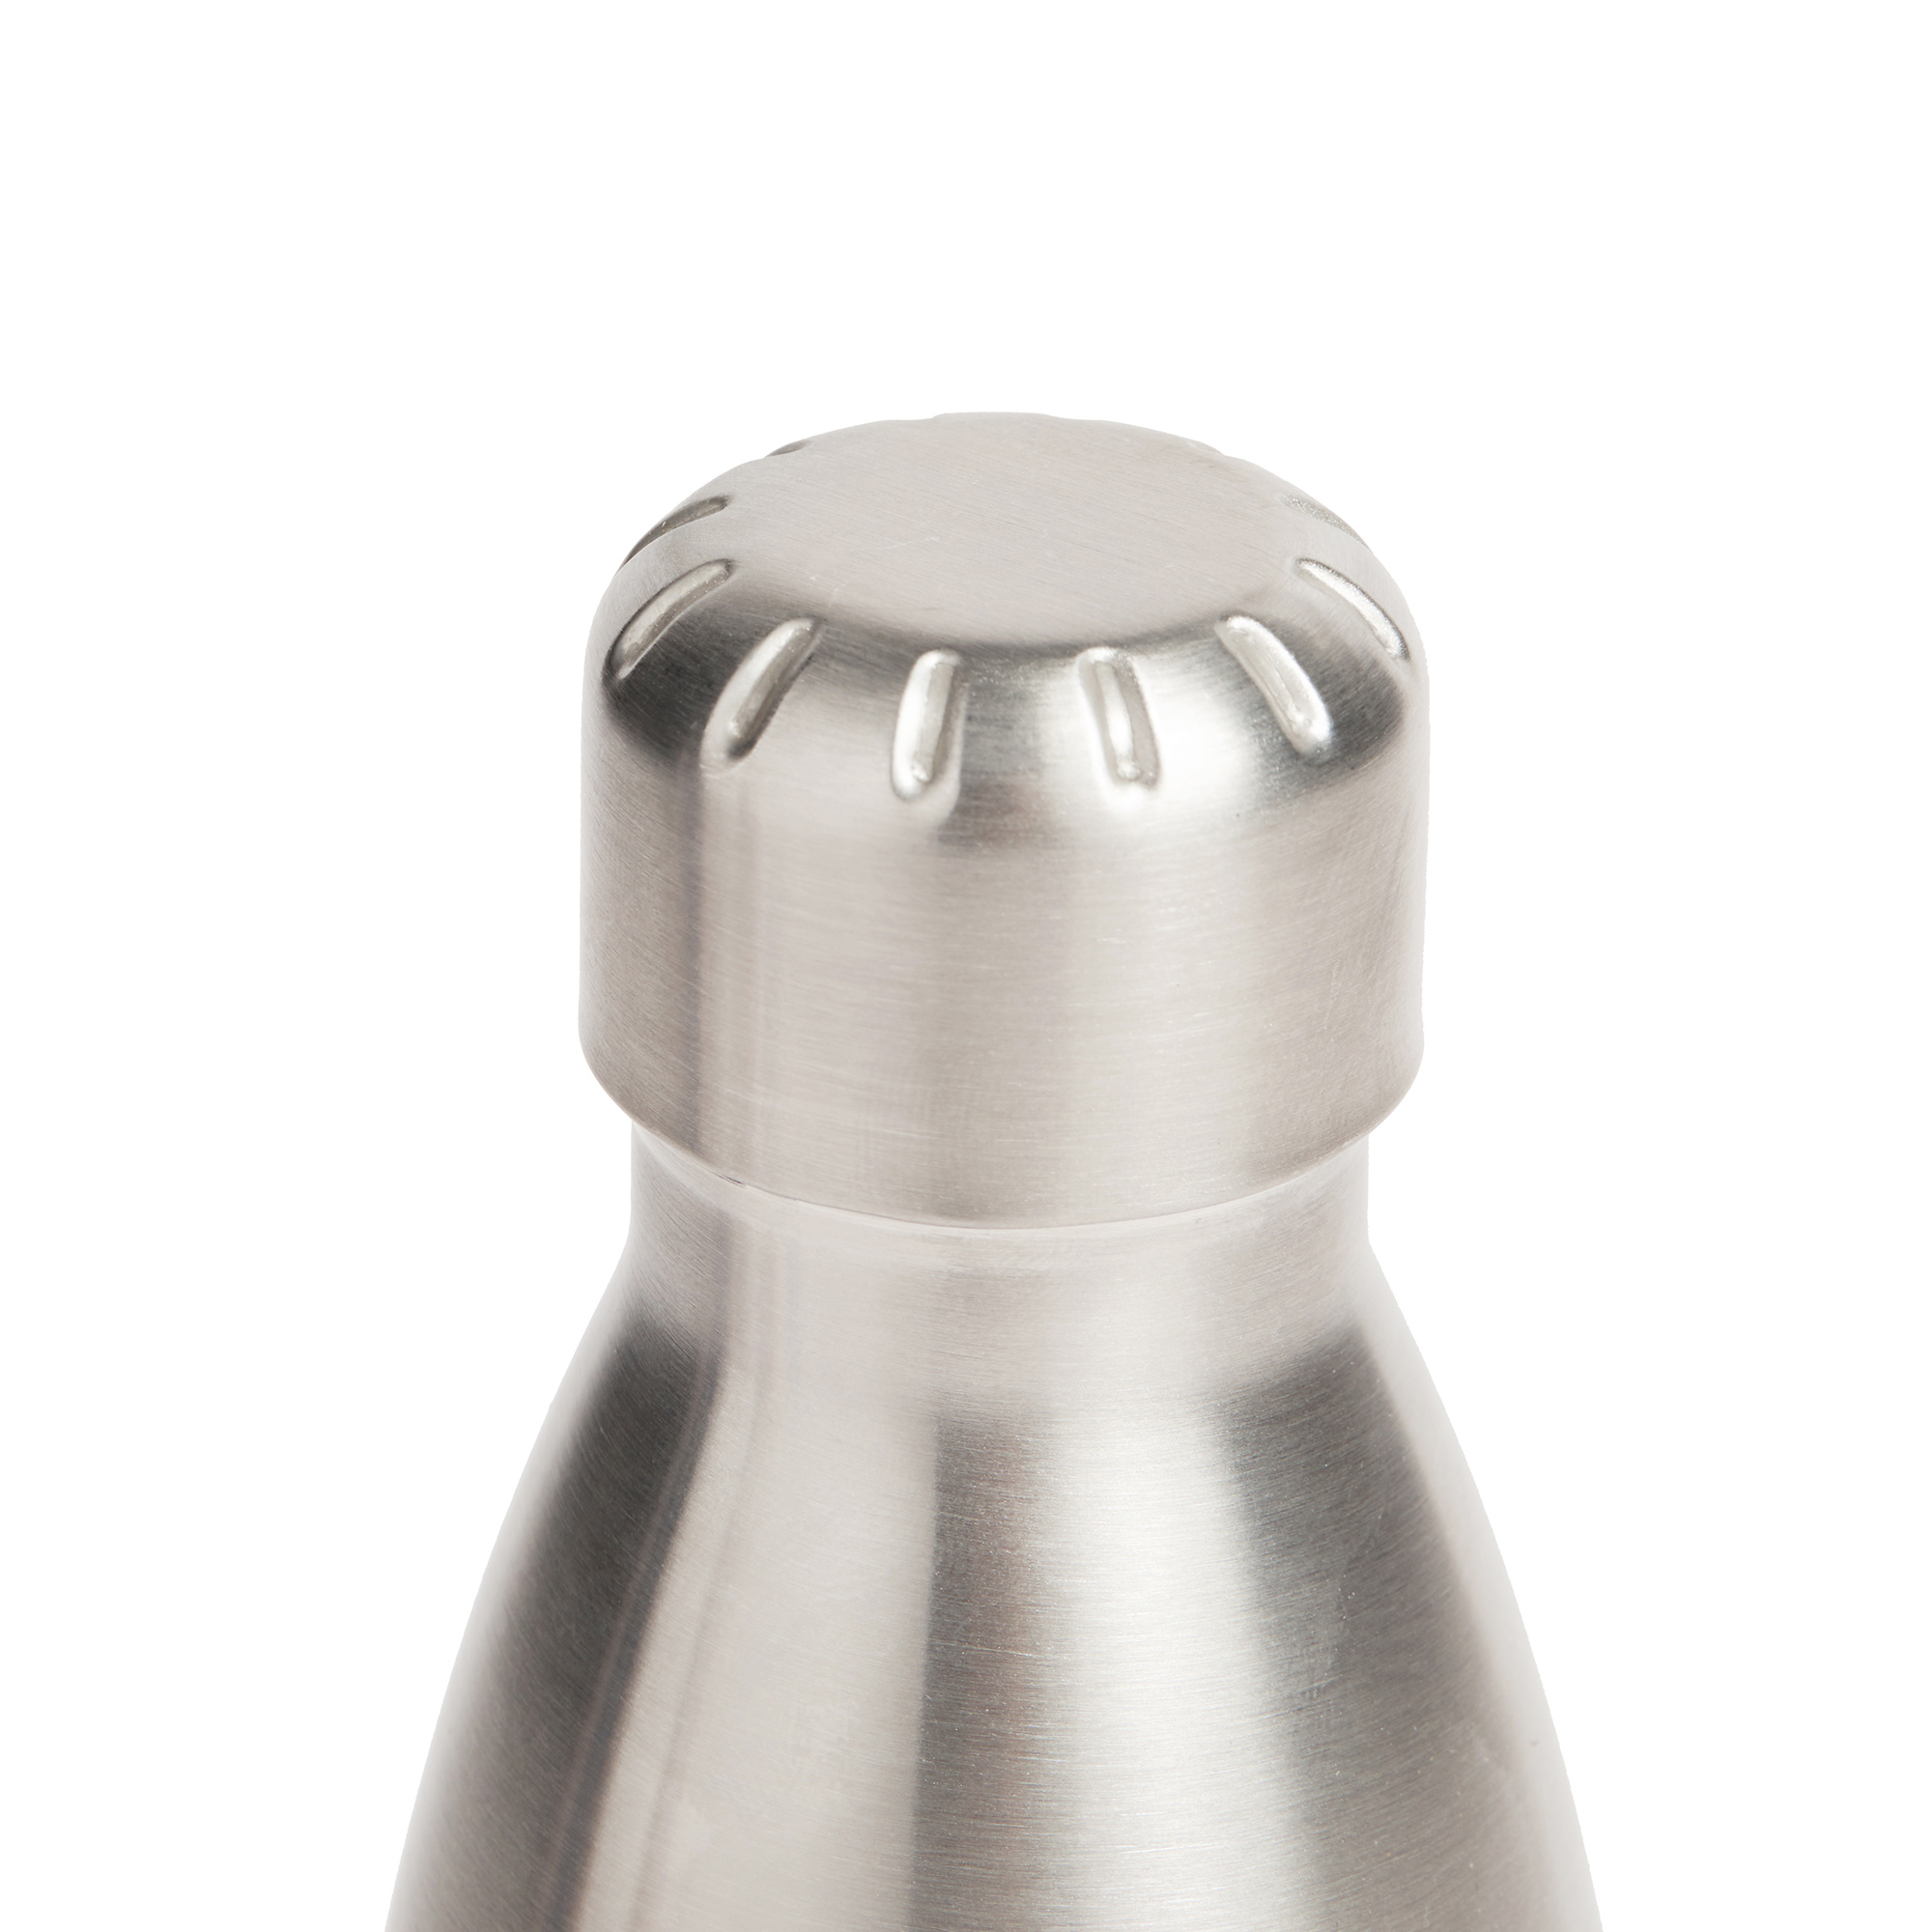 https://www.prodigi.com/download/product-range/stainless-steel-water-bottles/Prodigi-stainless-steel-water-bottle-lid.jpg